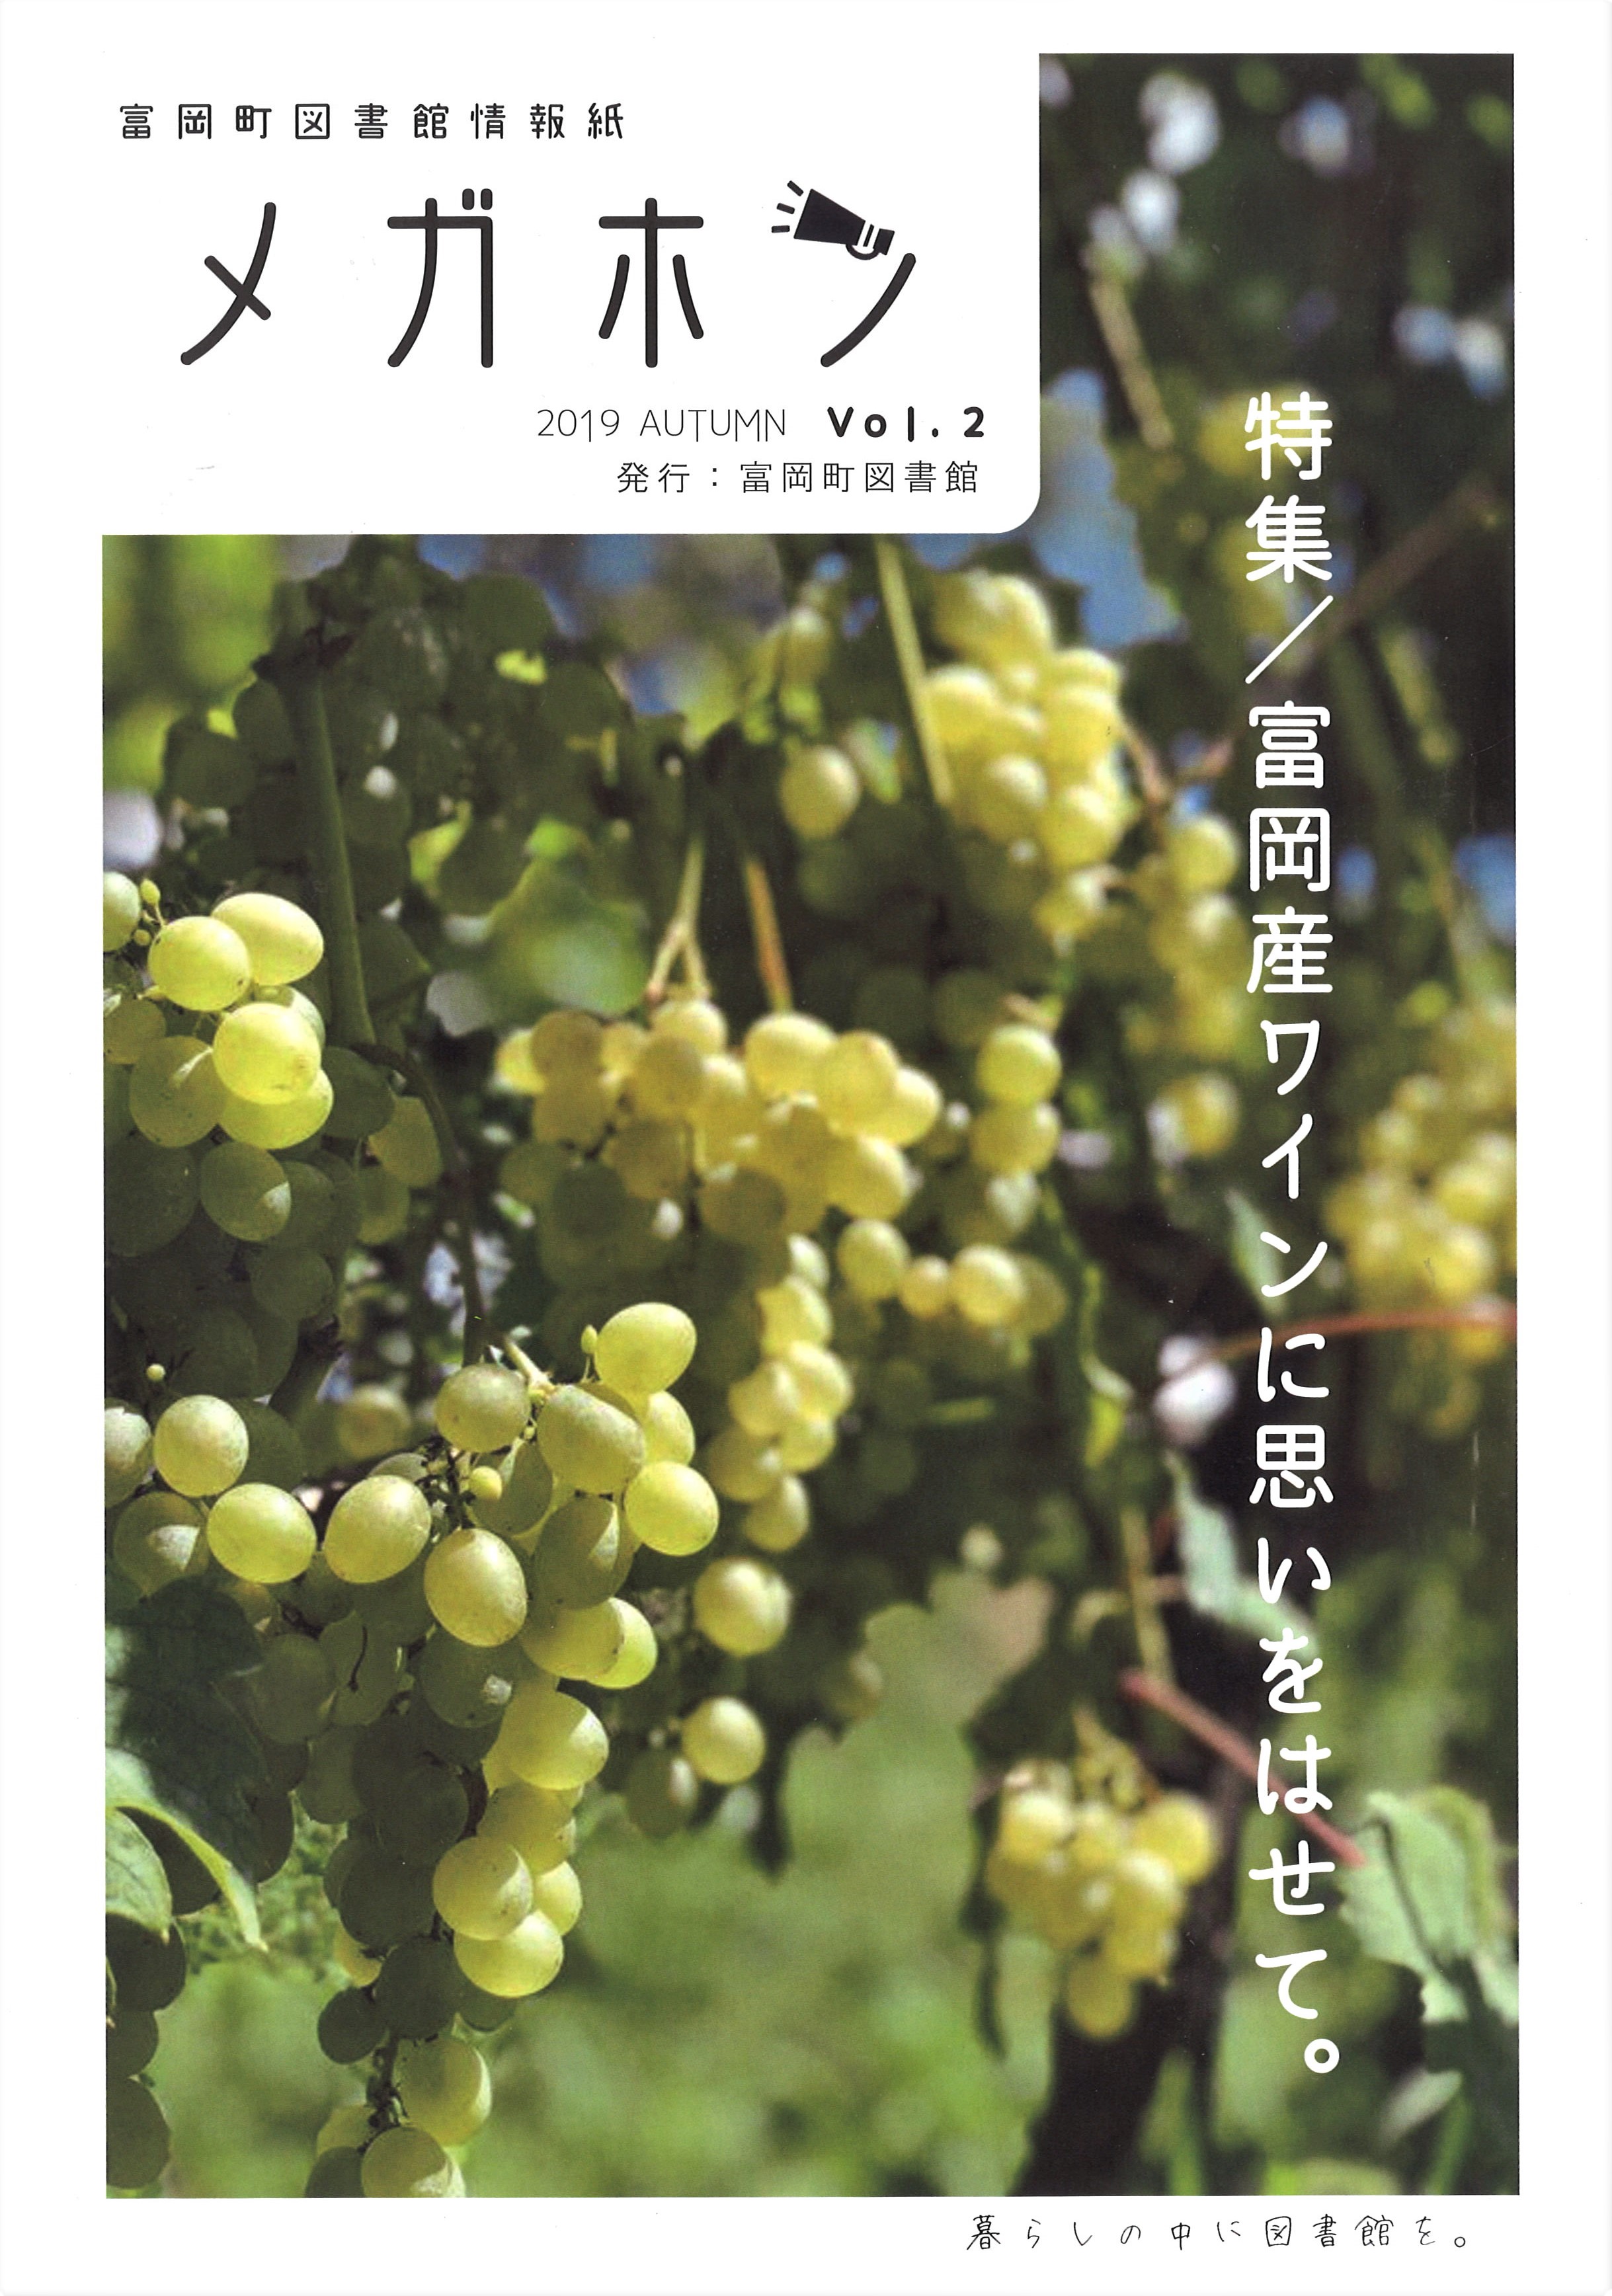 富岡町図書館の情報紙『メガホン』にインタビュー記事が掲載されましたの画像